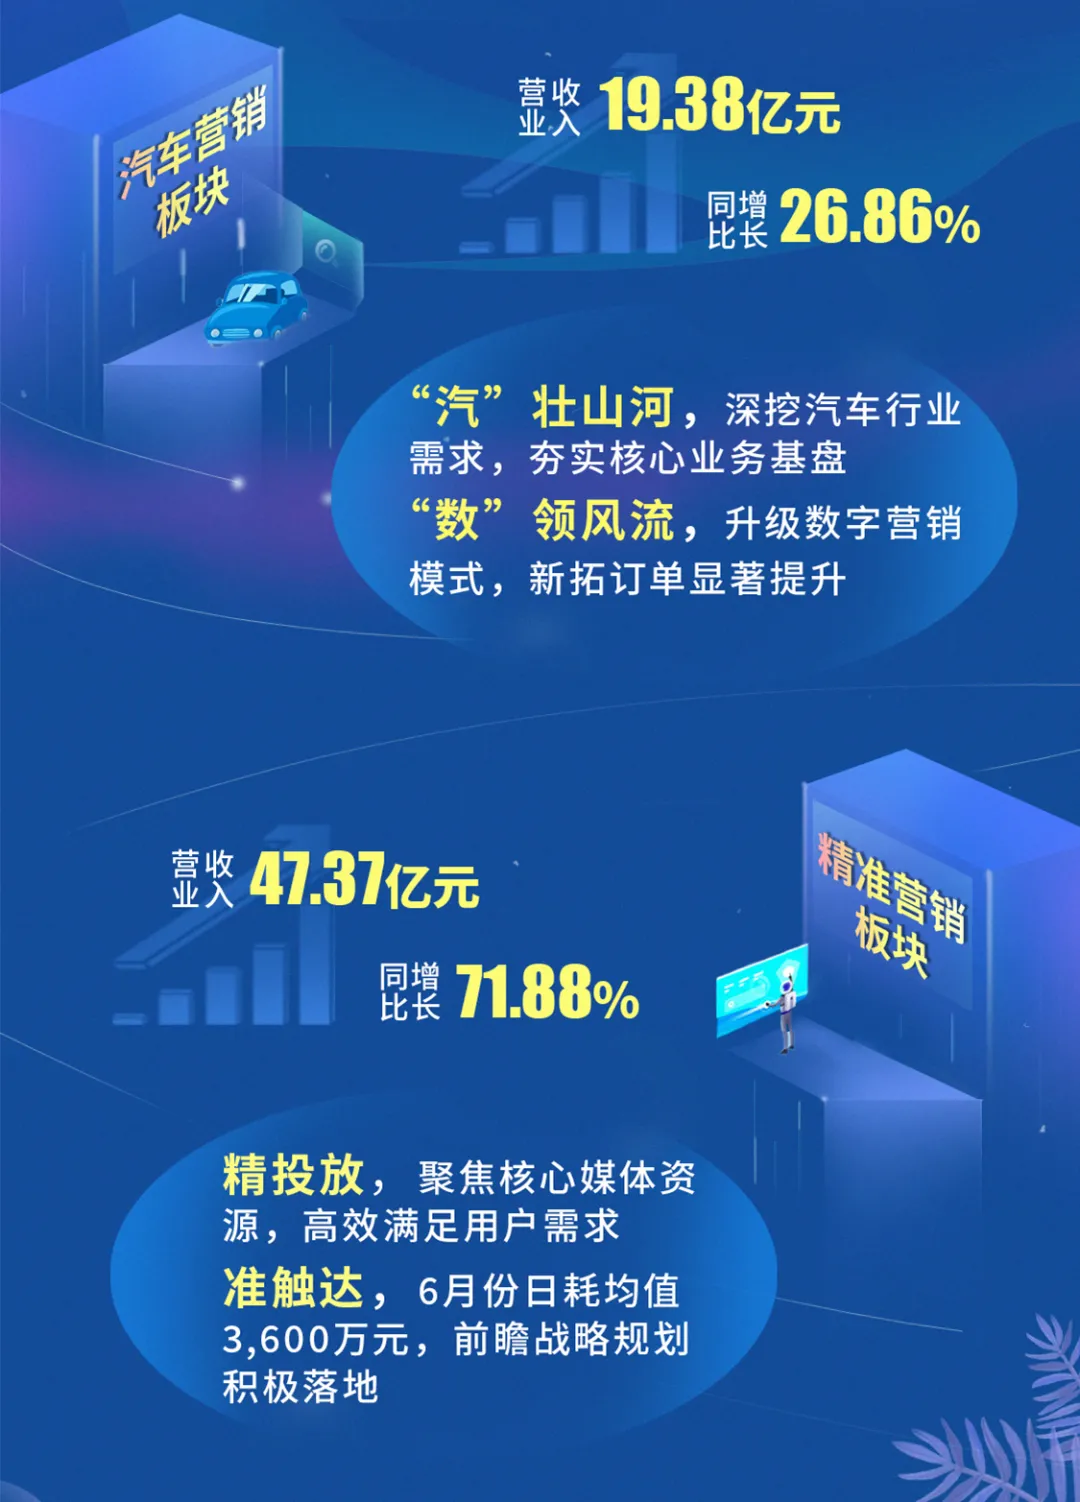 业绩高增长背后，浙文互联正成为数字经济弄潮儿